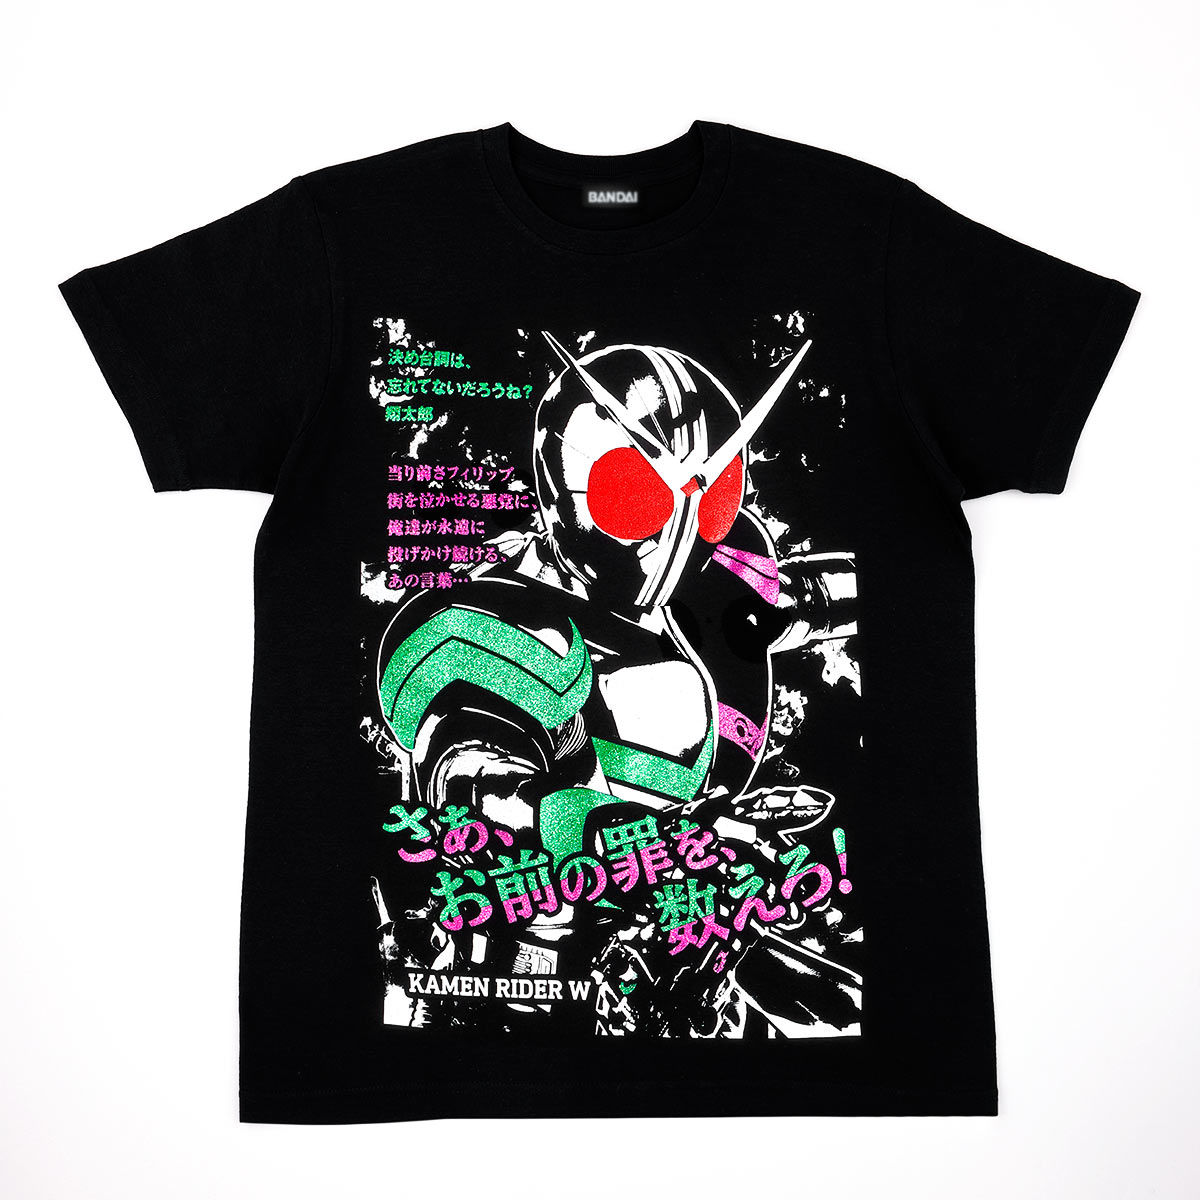 Kamen Rider W Climax Scene T-shirt - Kamen Rider W ver.